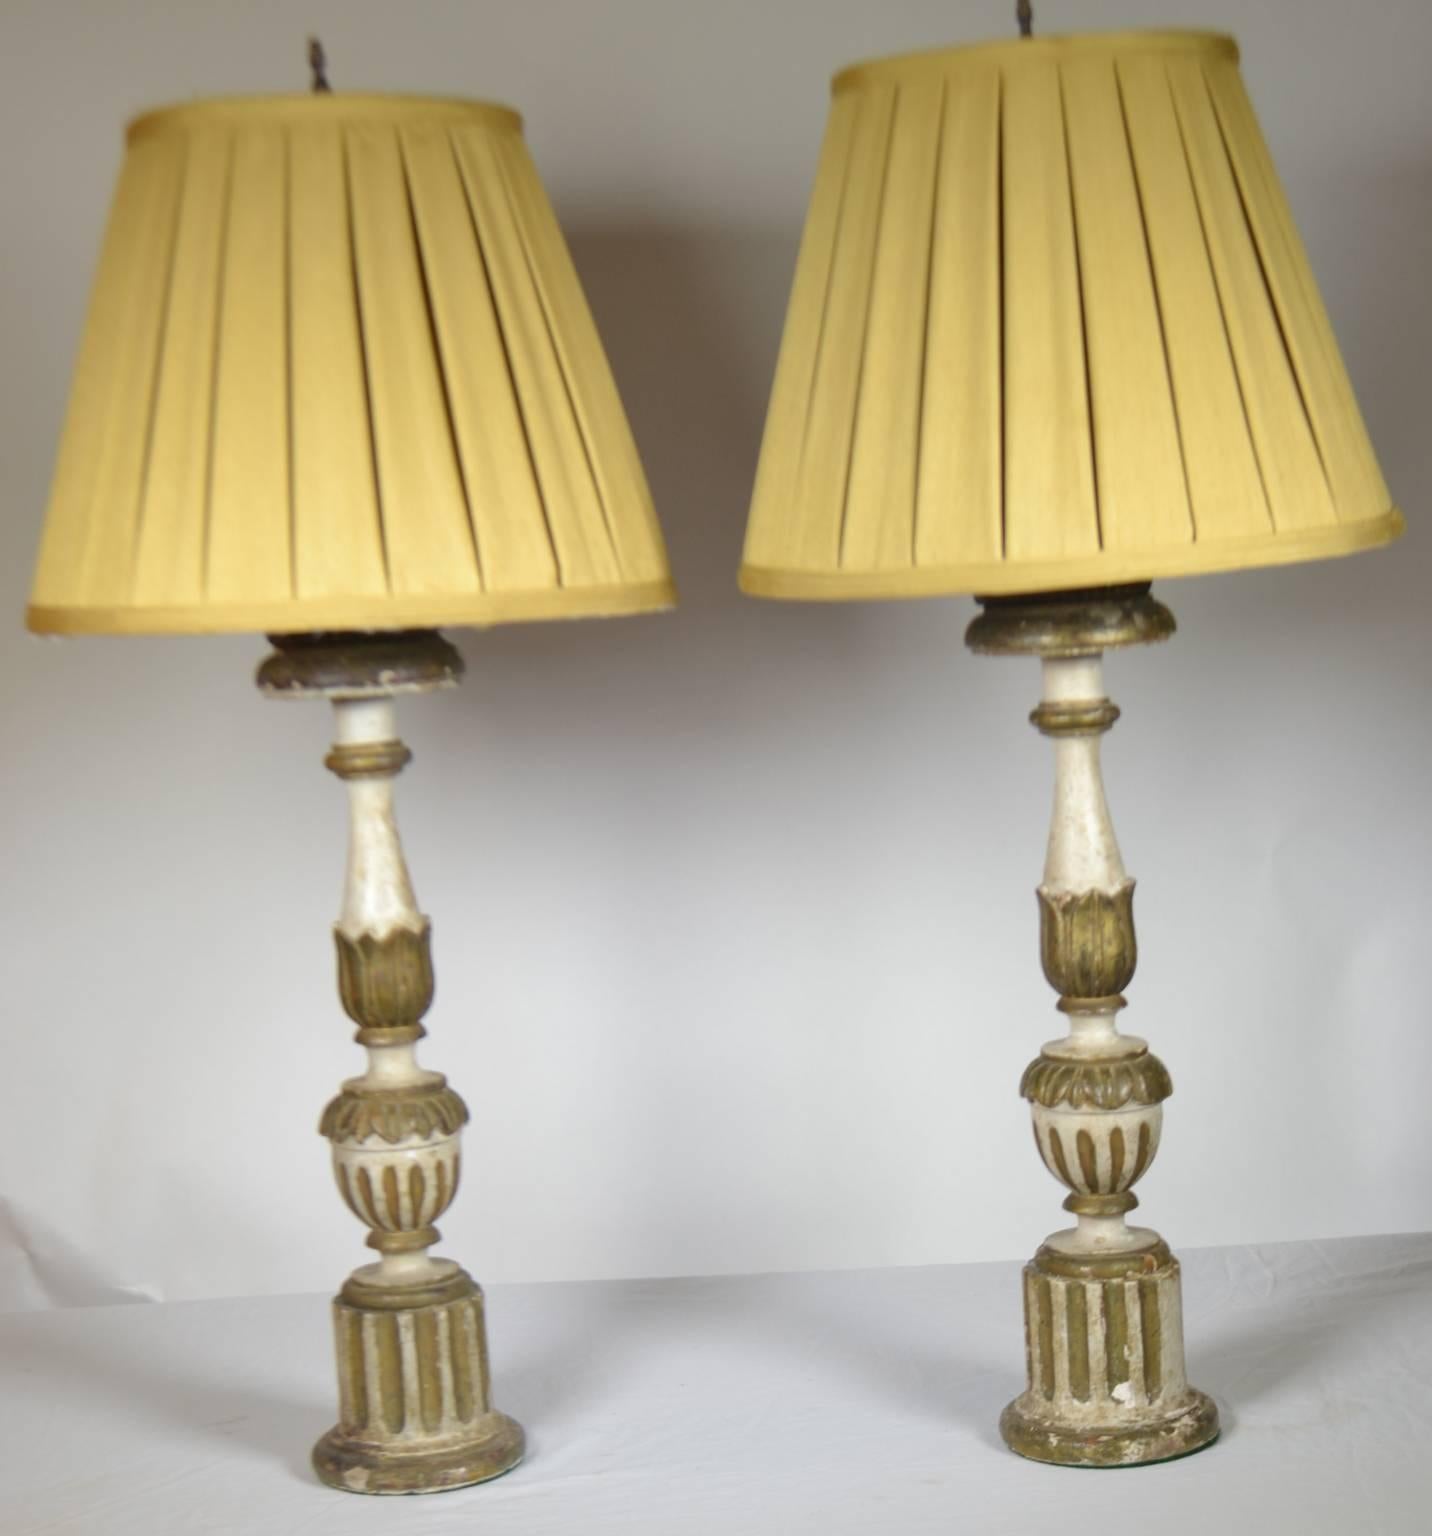 paire de lampes chandeliers cannelées italiennes du XVIIIe siècle, polychromées.